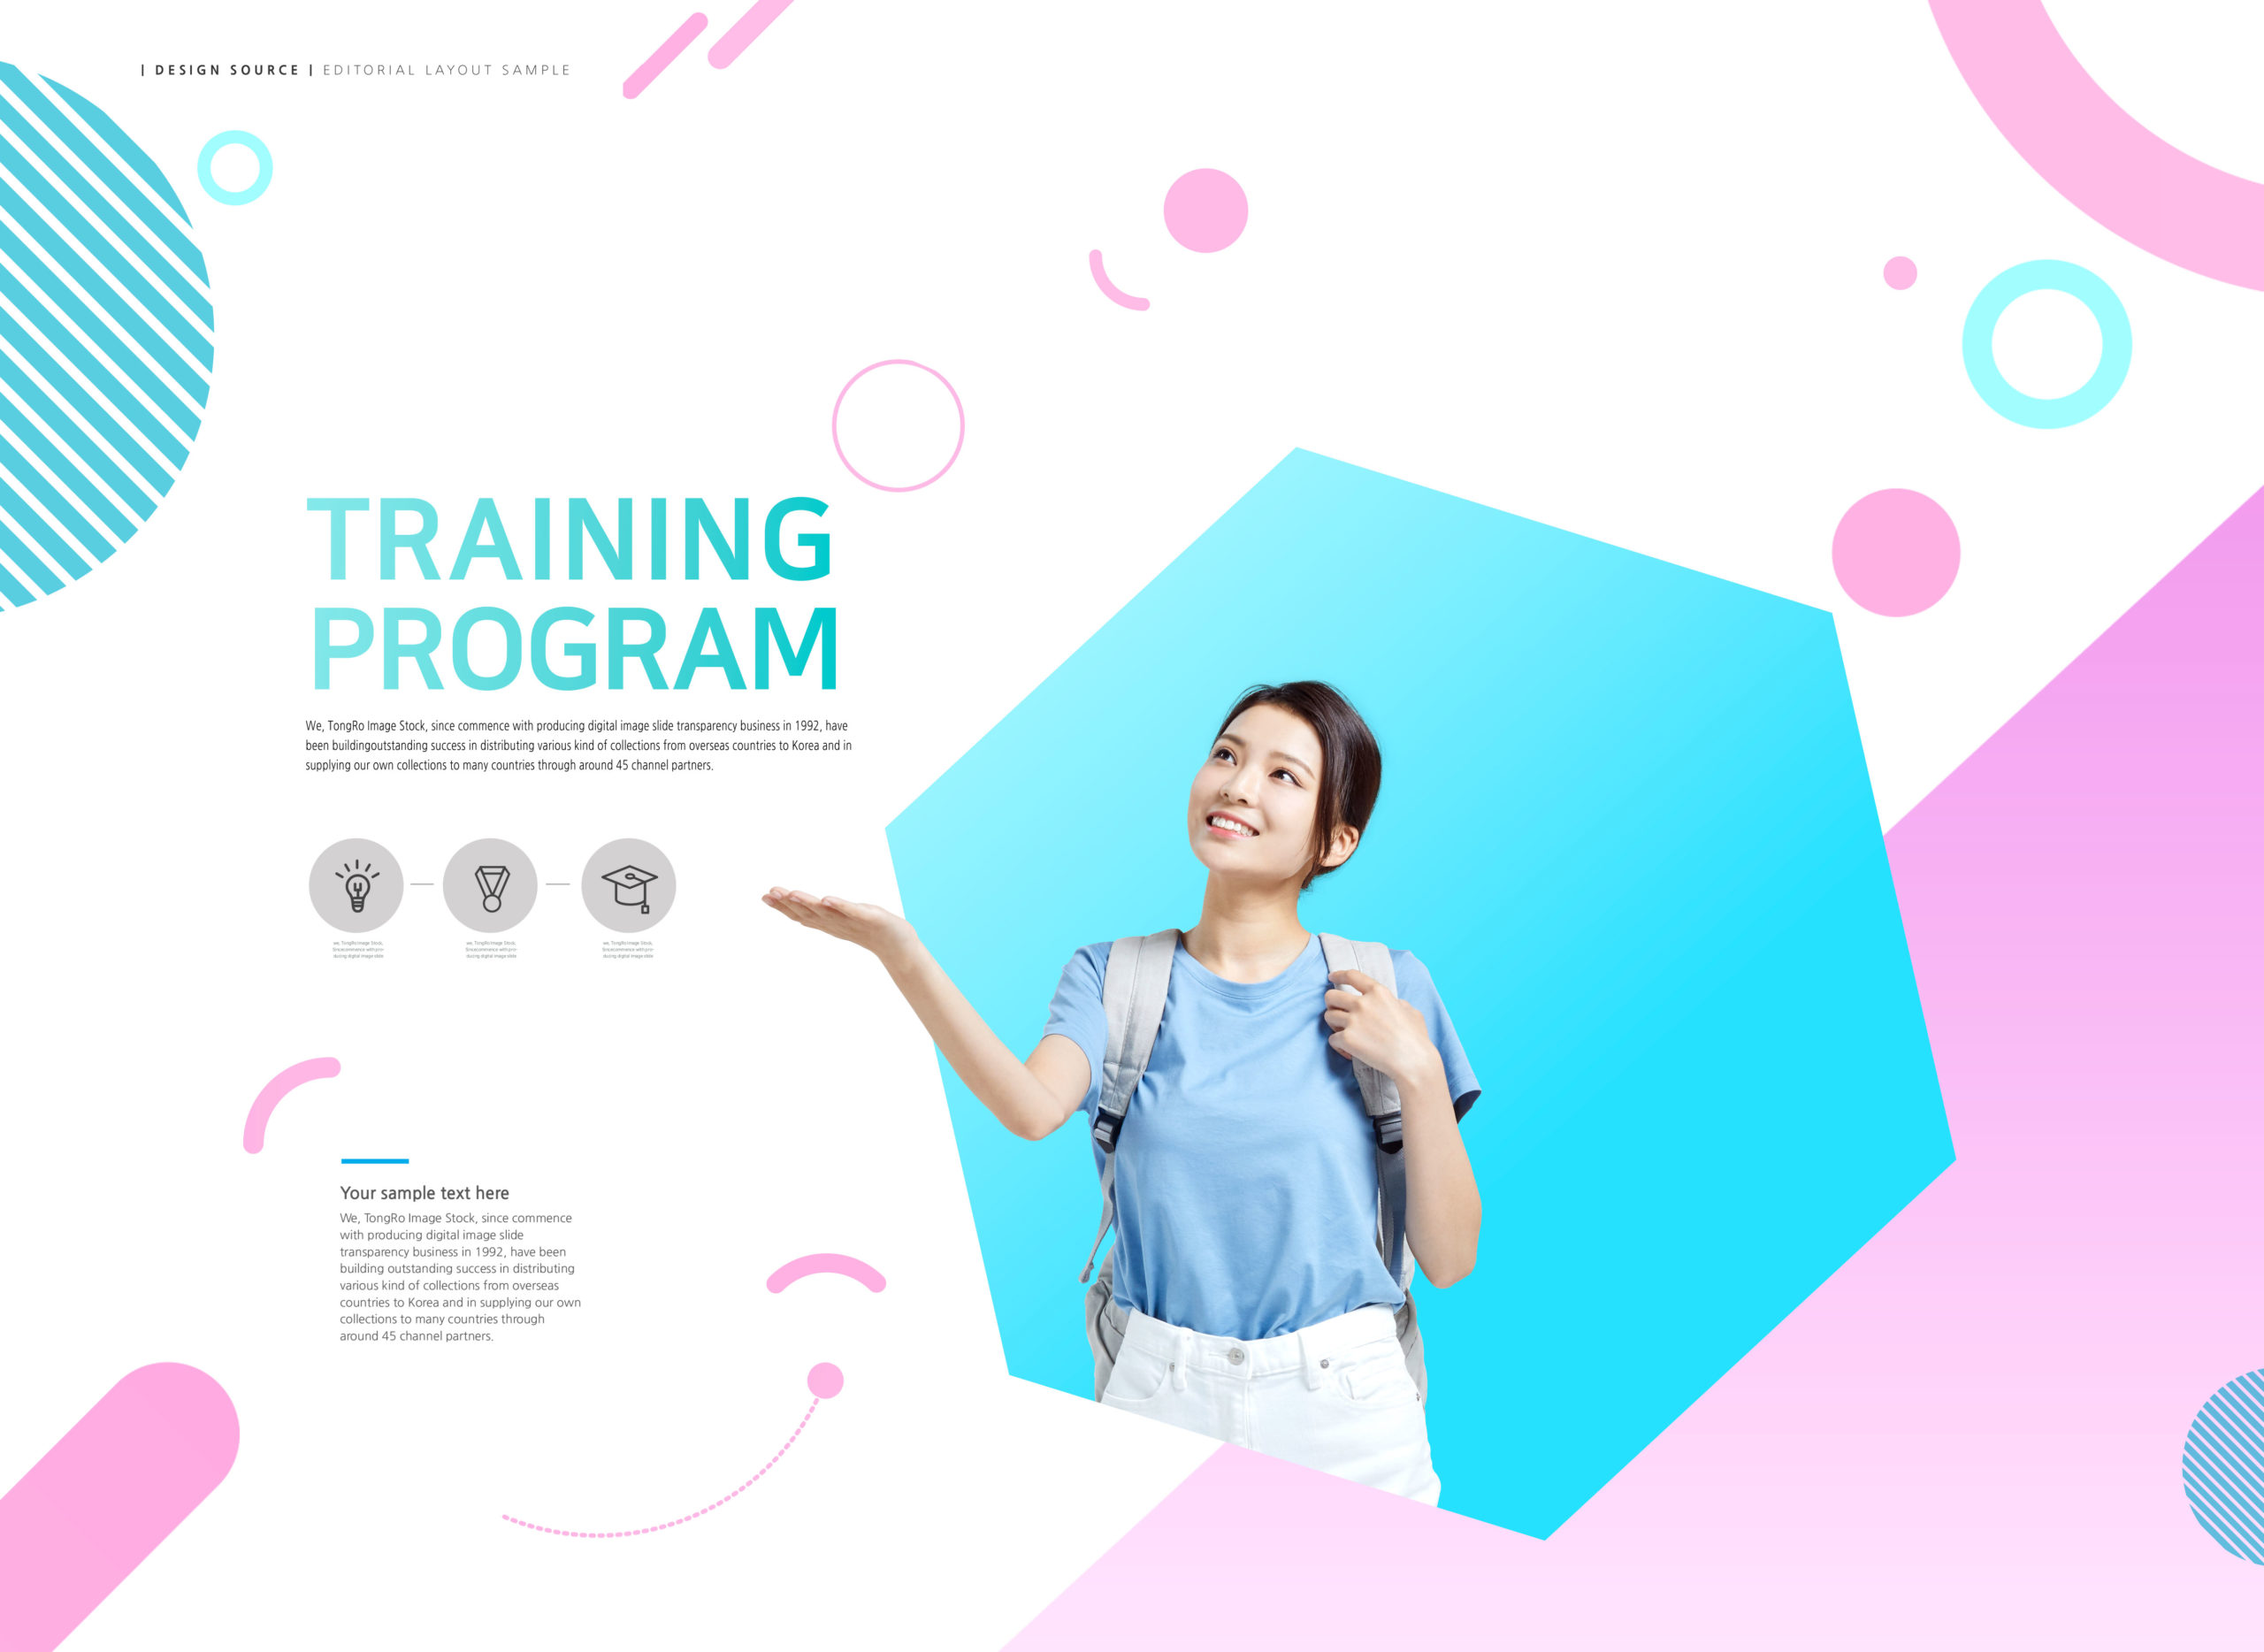 学习培训计划教育网站主页设计模板套装[PSD]插图(3)